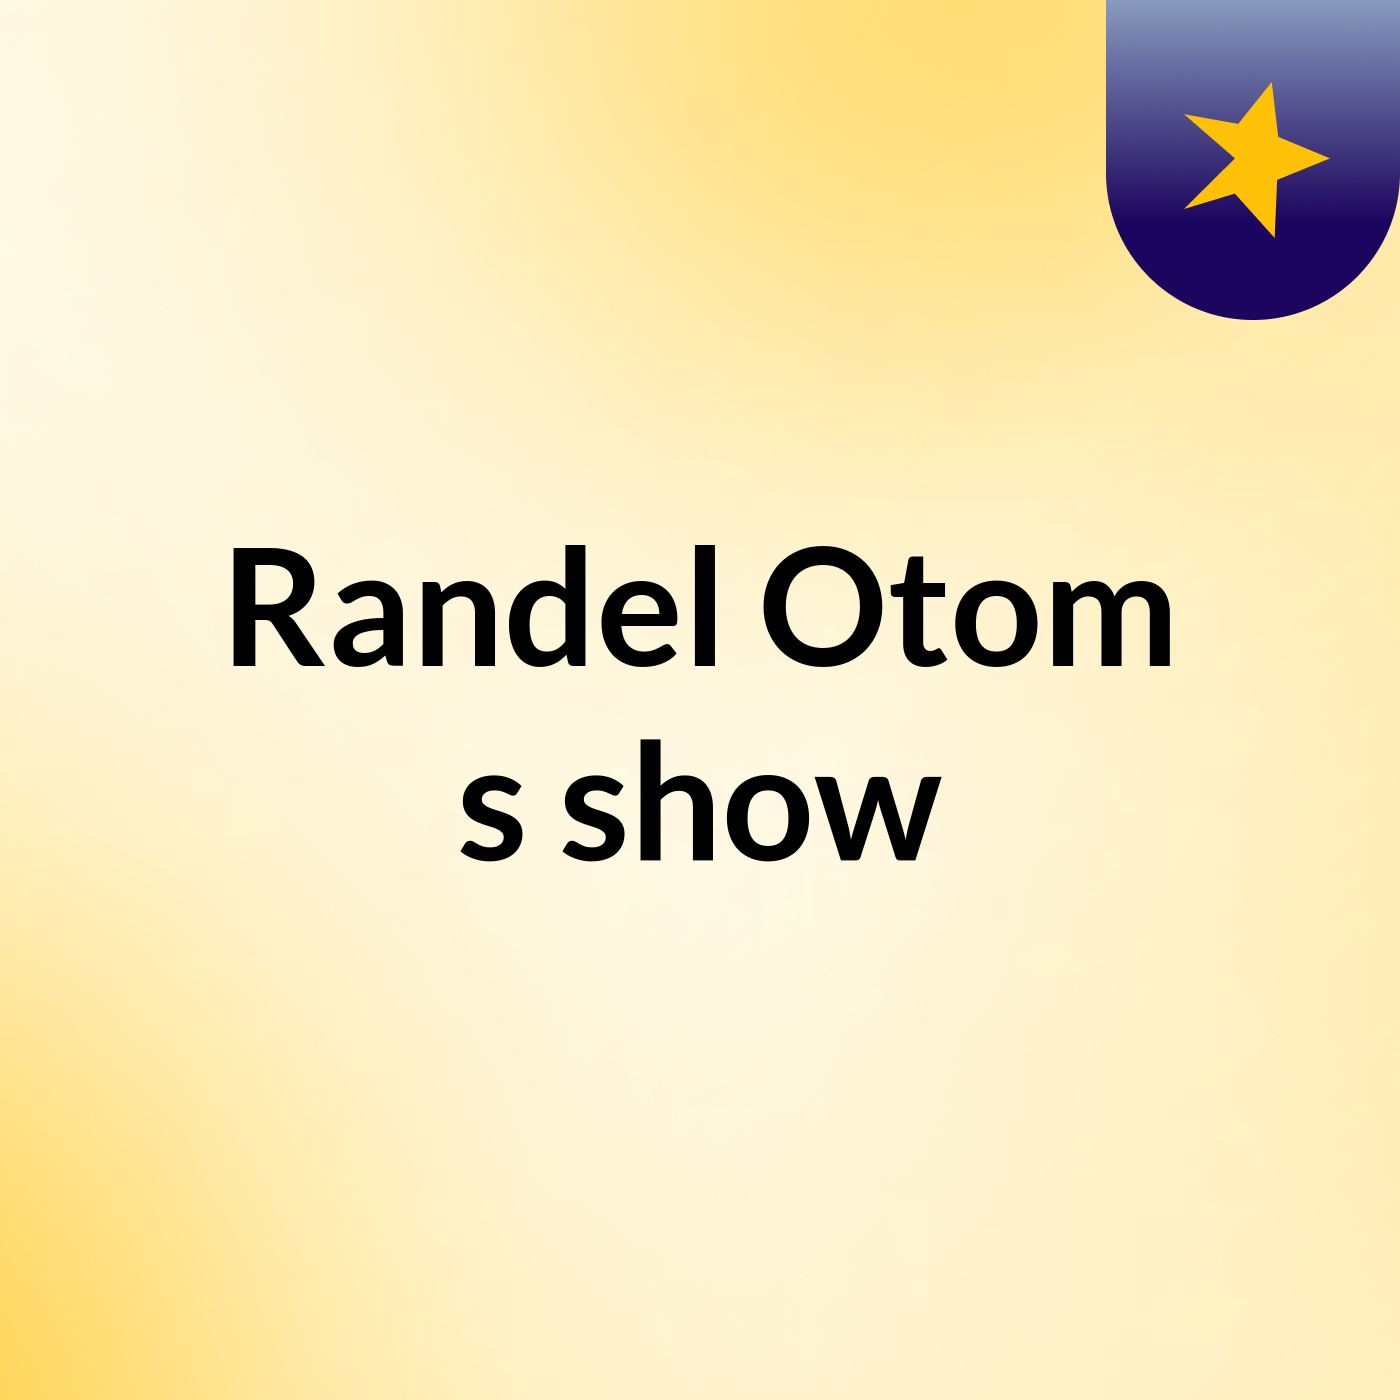 Randel Otom's show